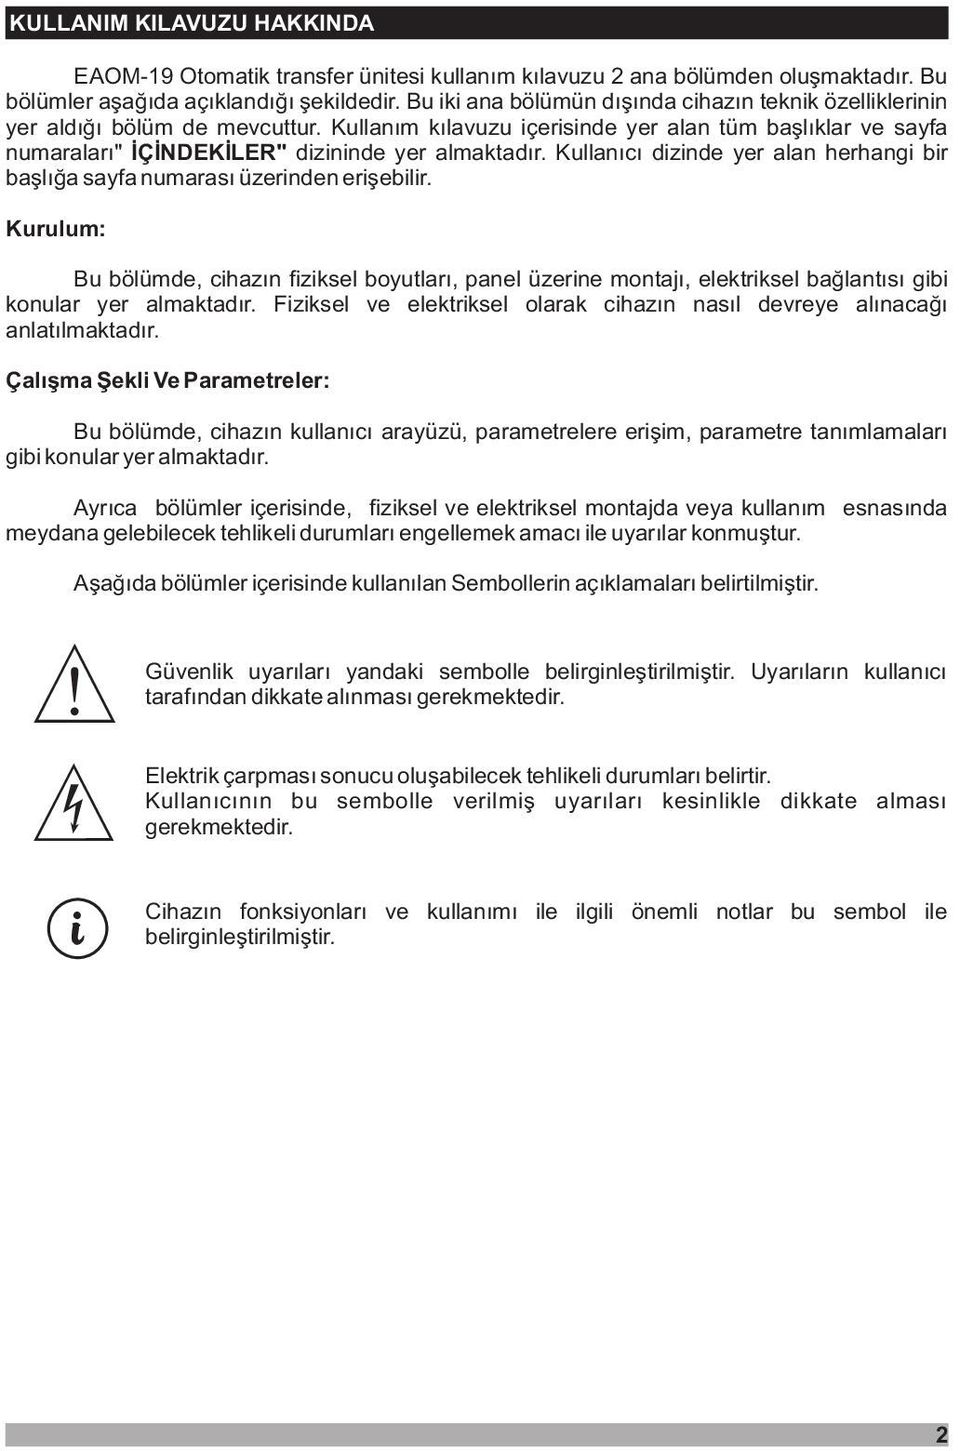 Kullanýcý dizinde yer alan herhangi bir baþlýða sayfa numarasý üzerinden eriþebilir.